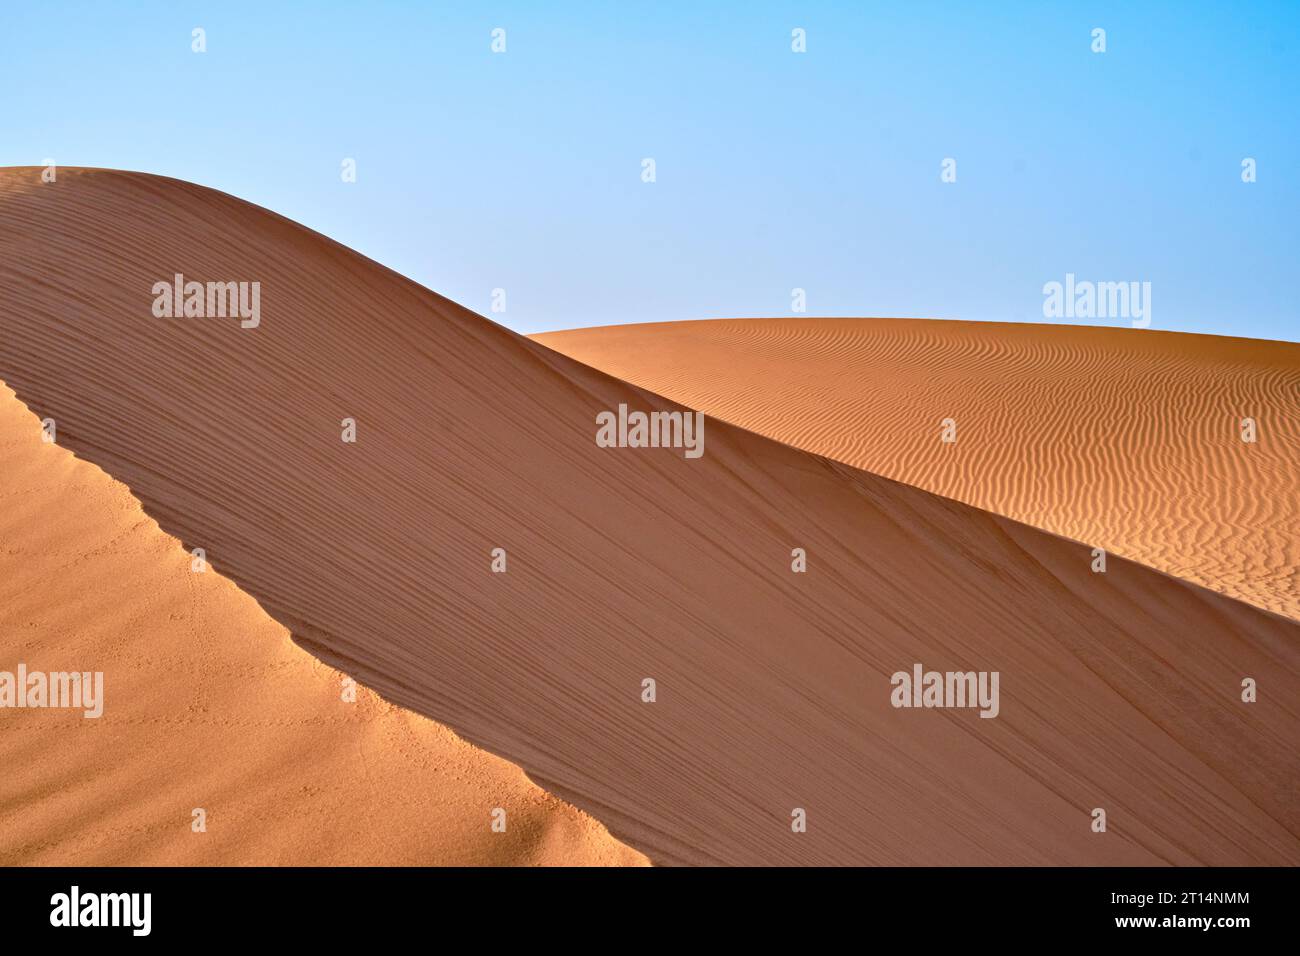 Sanddünen in der Sahara, Marokko, an einem klaren blauen Himmel. Stockfoto